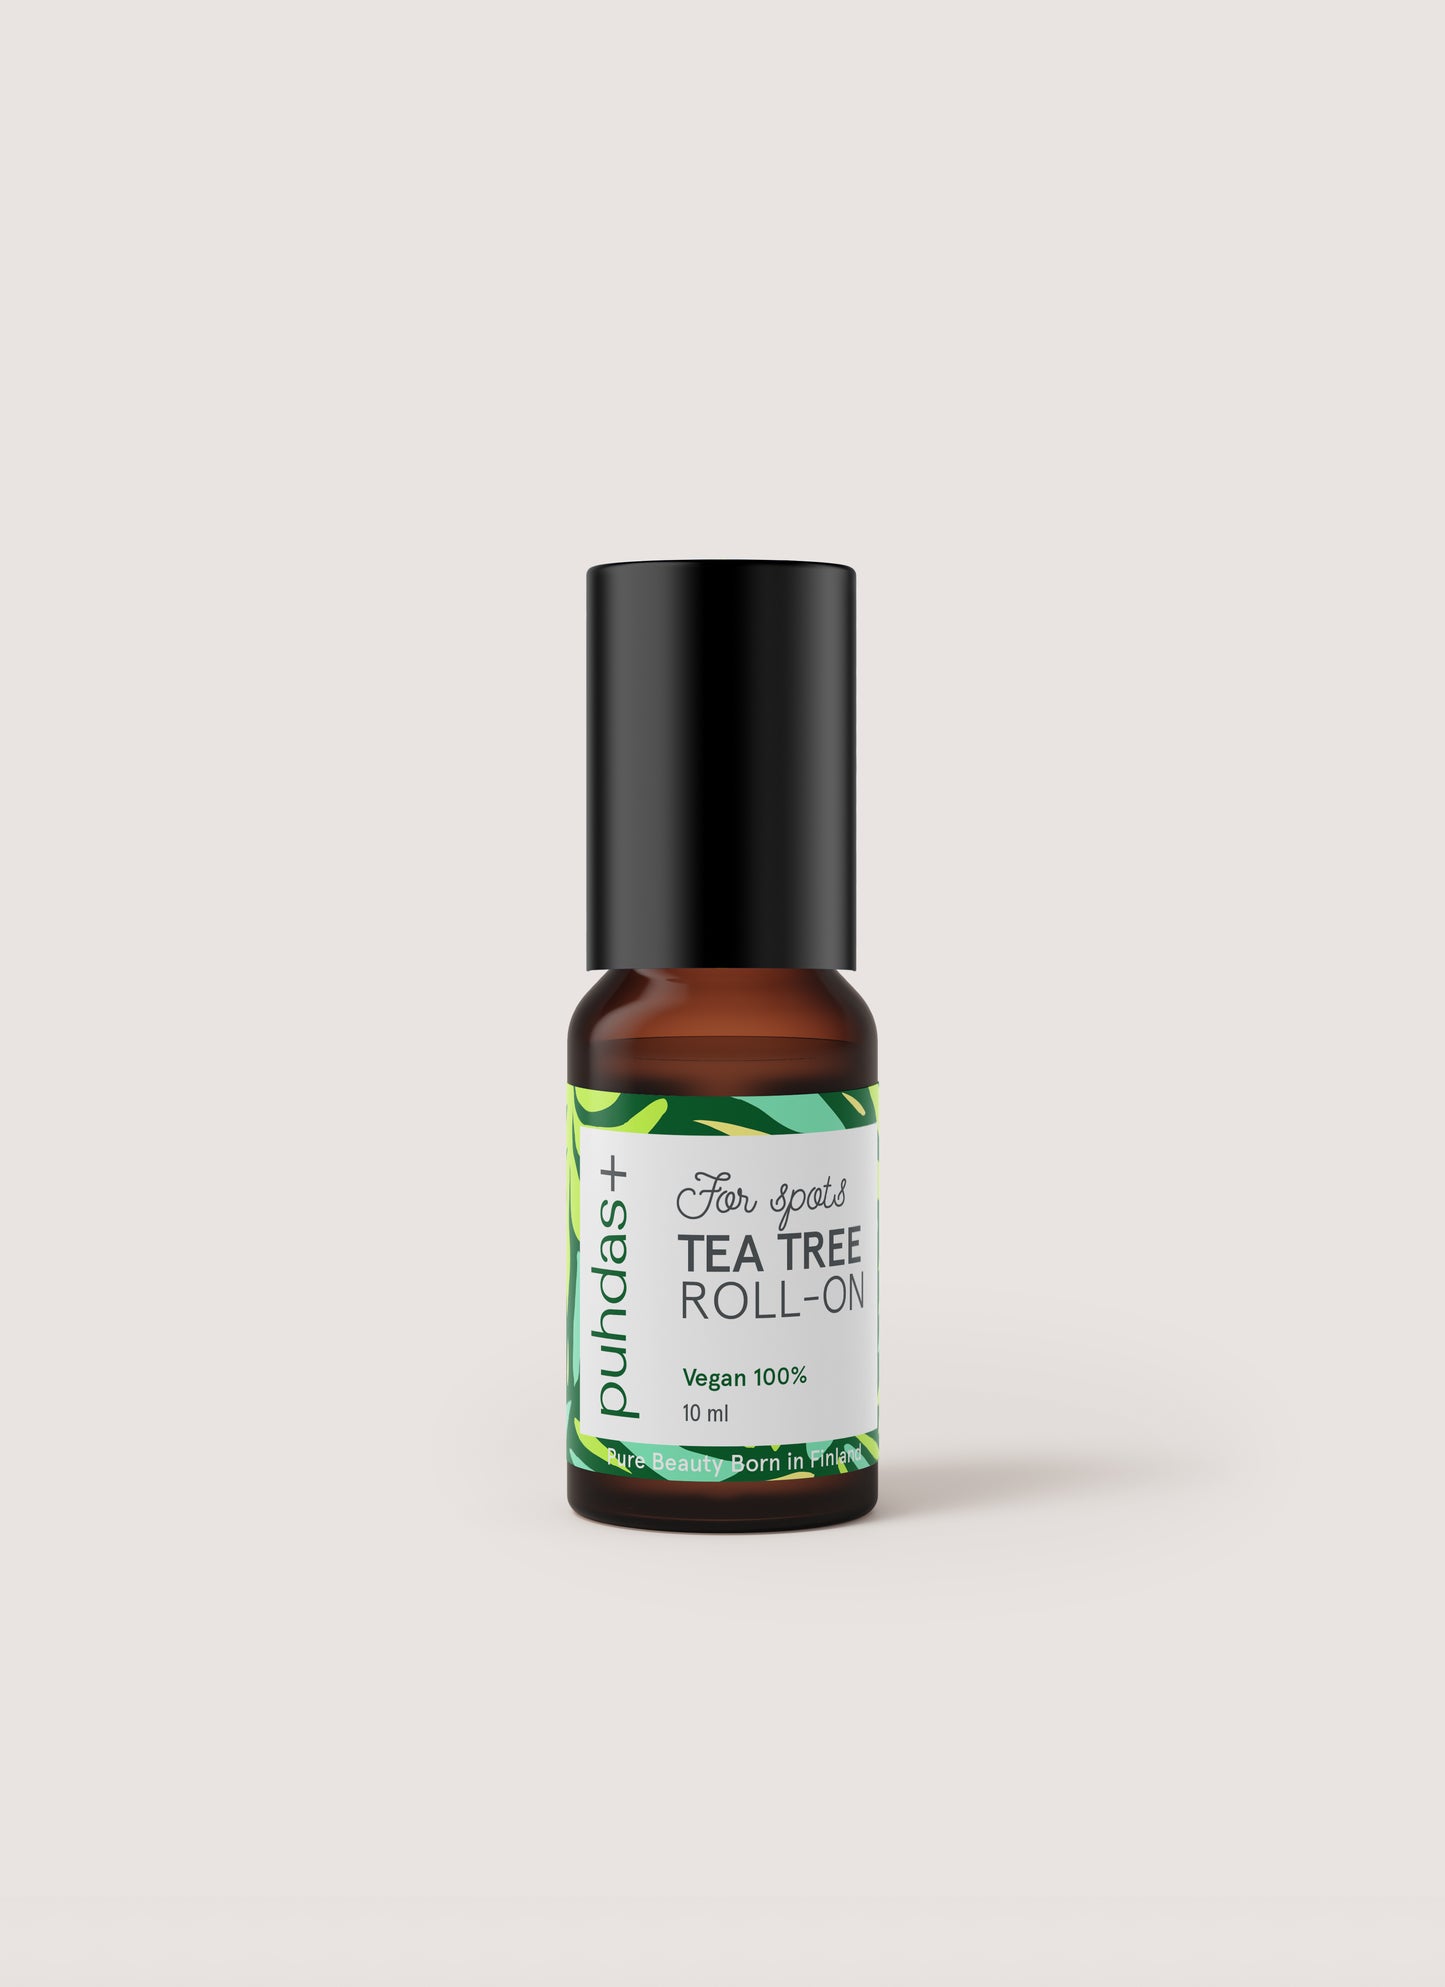 Tea Tree Roll-on (Tea tree oil) 10ml